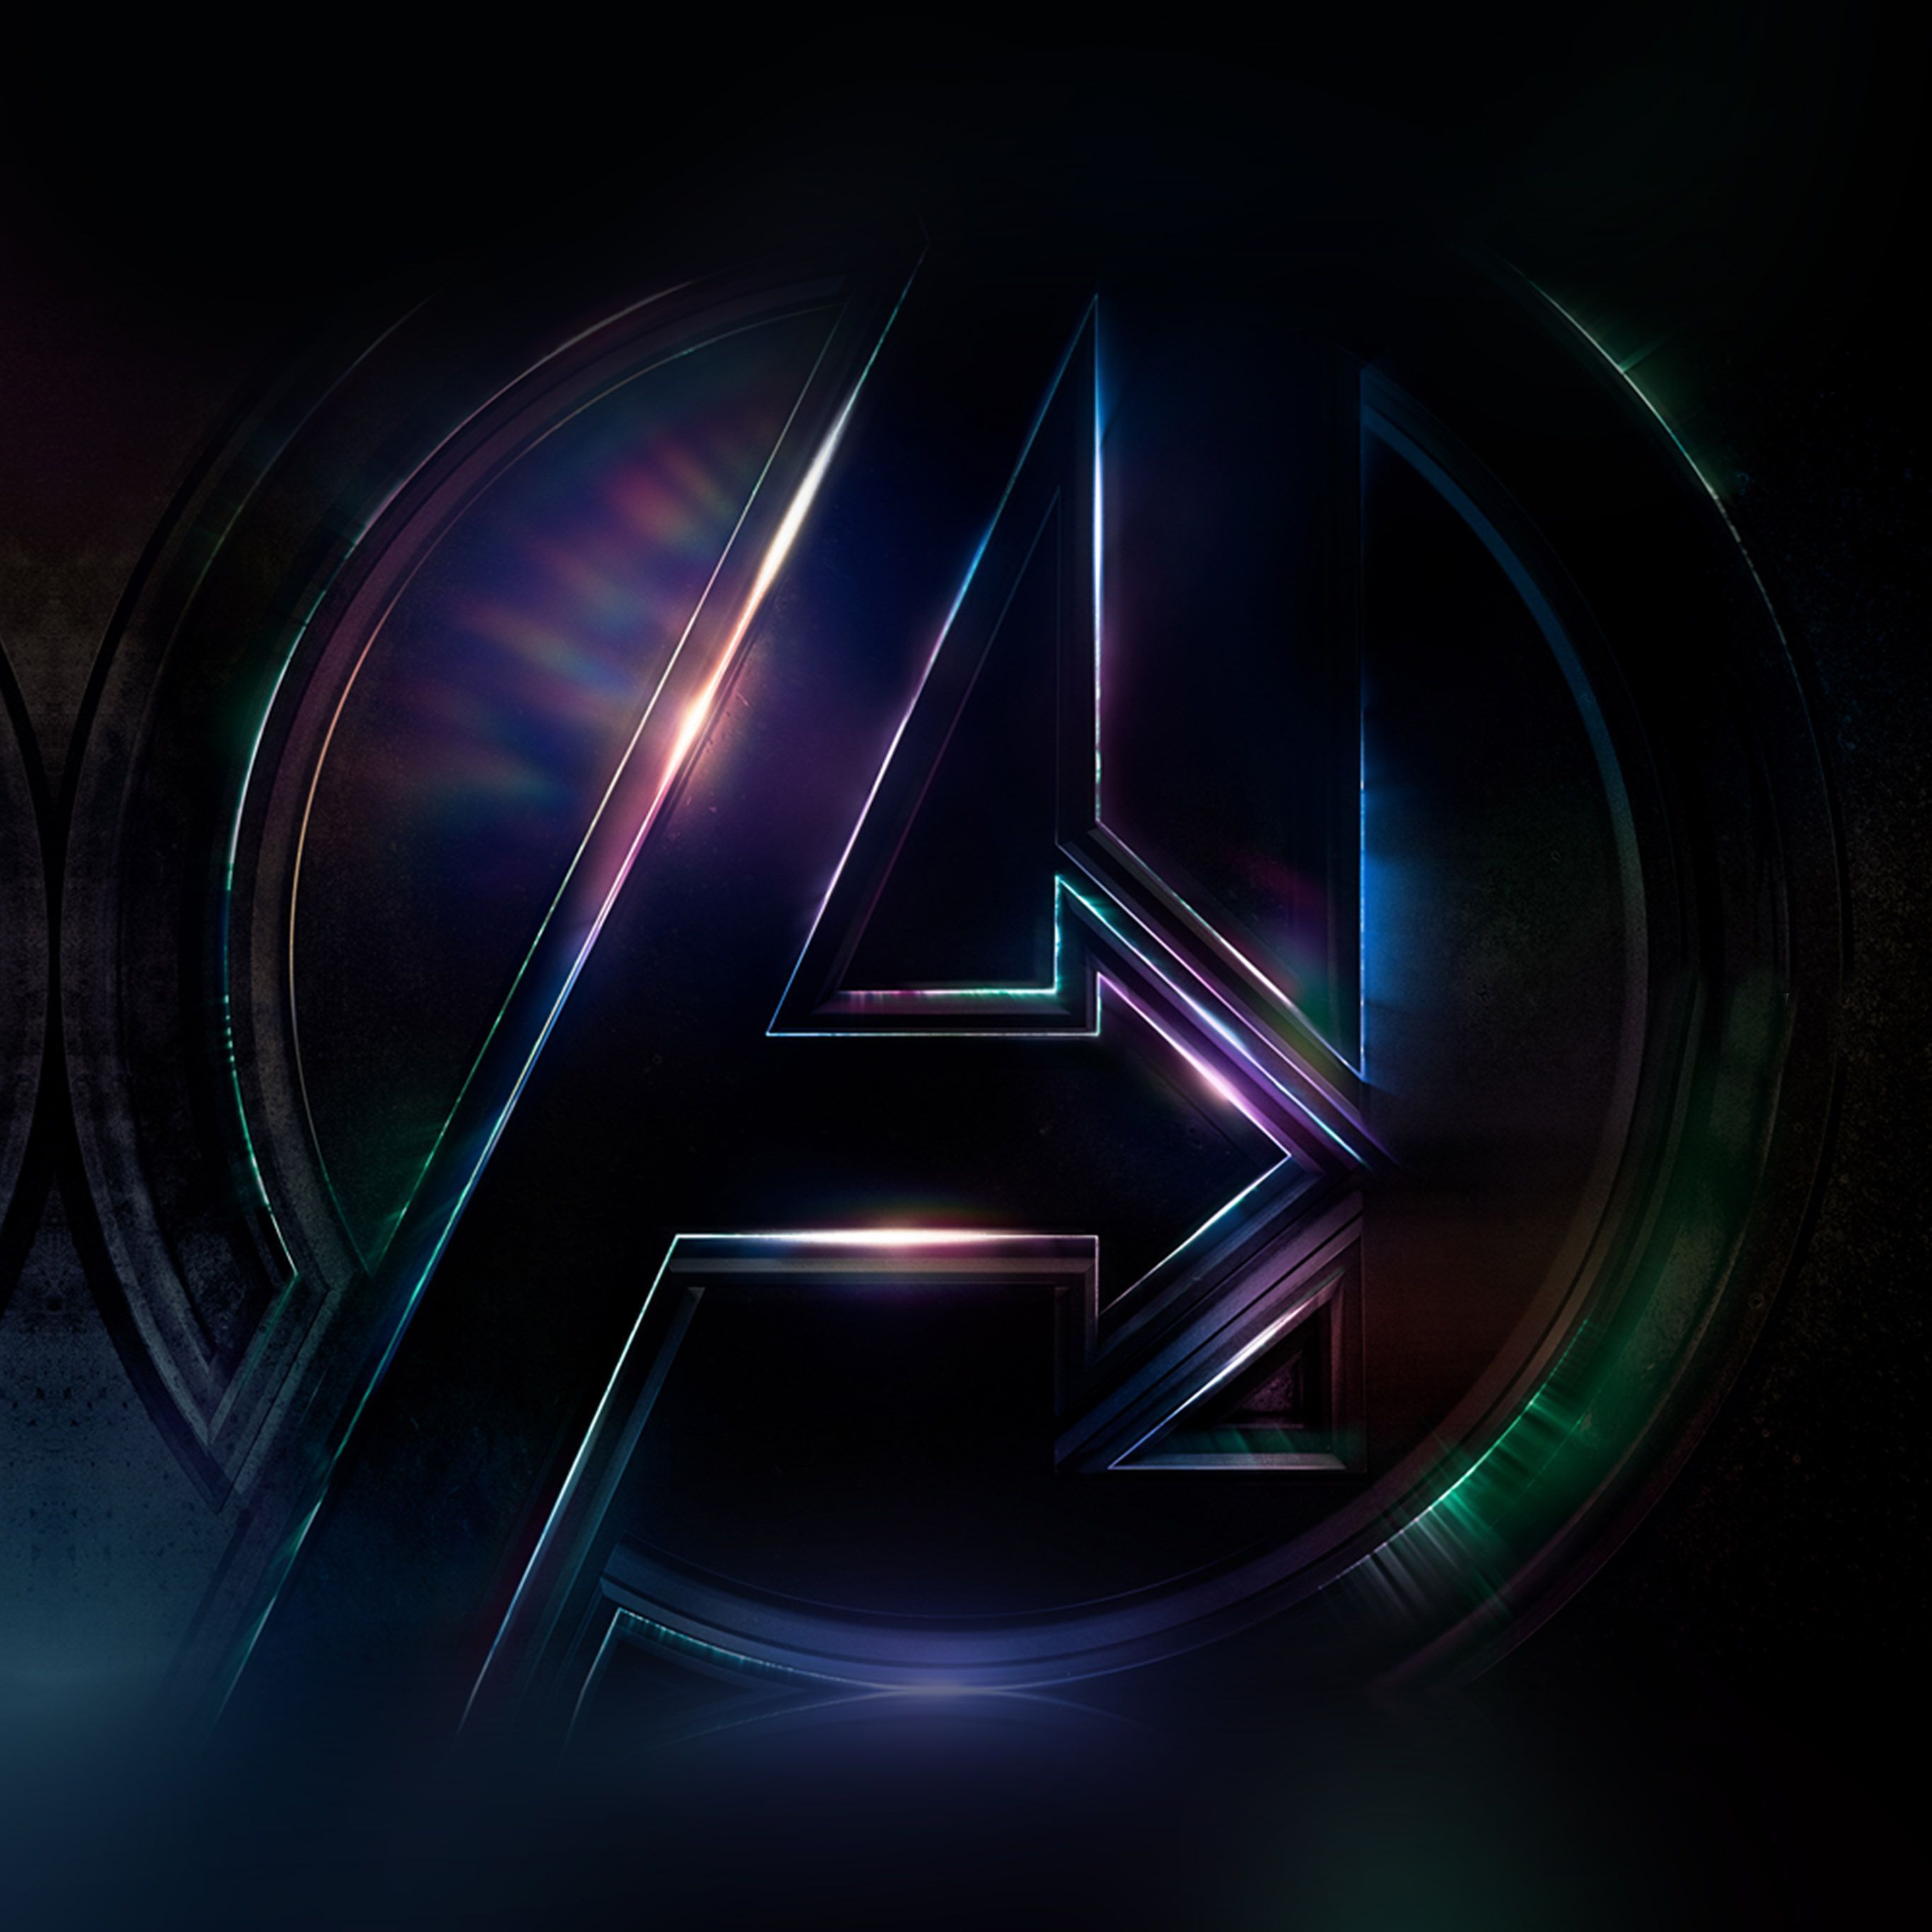 Marvel Avengers Logo Wallpaper Free Marvel Avengers Logo Background - Avengers logo, Avengers wallpaper, Film art